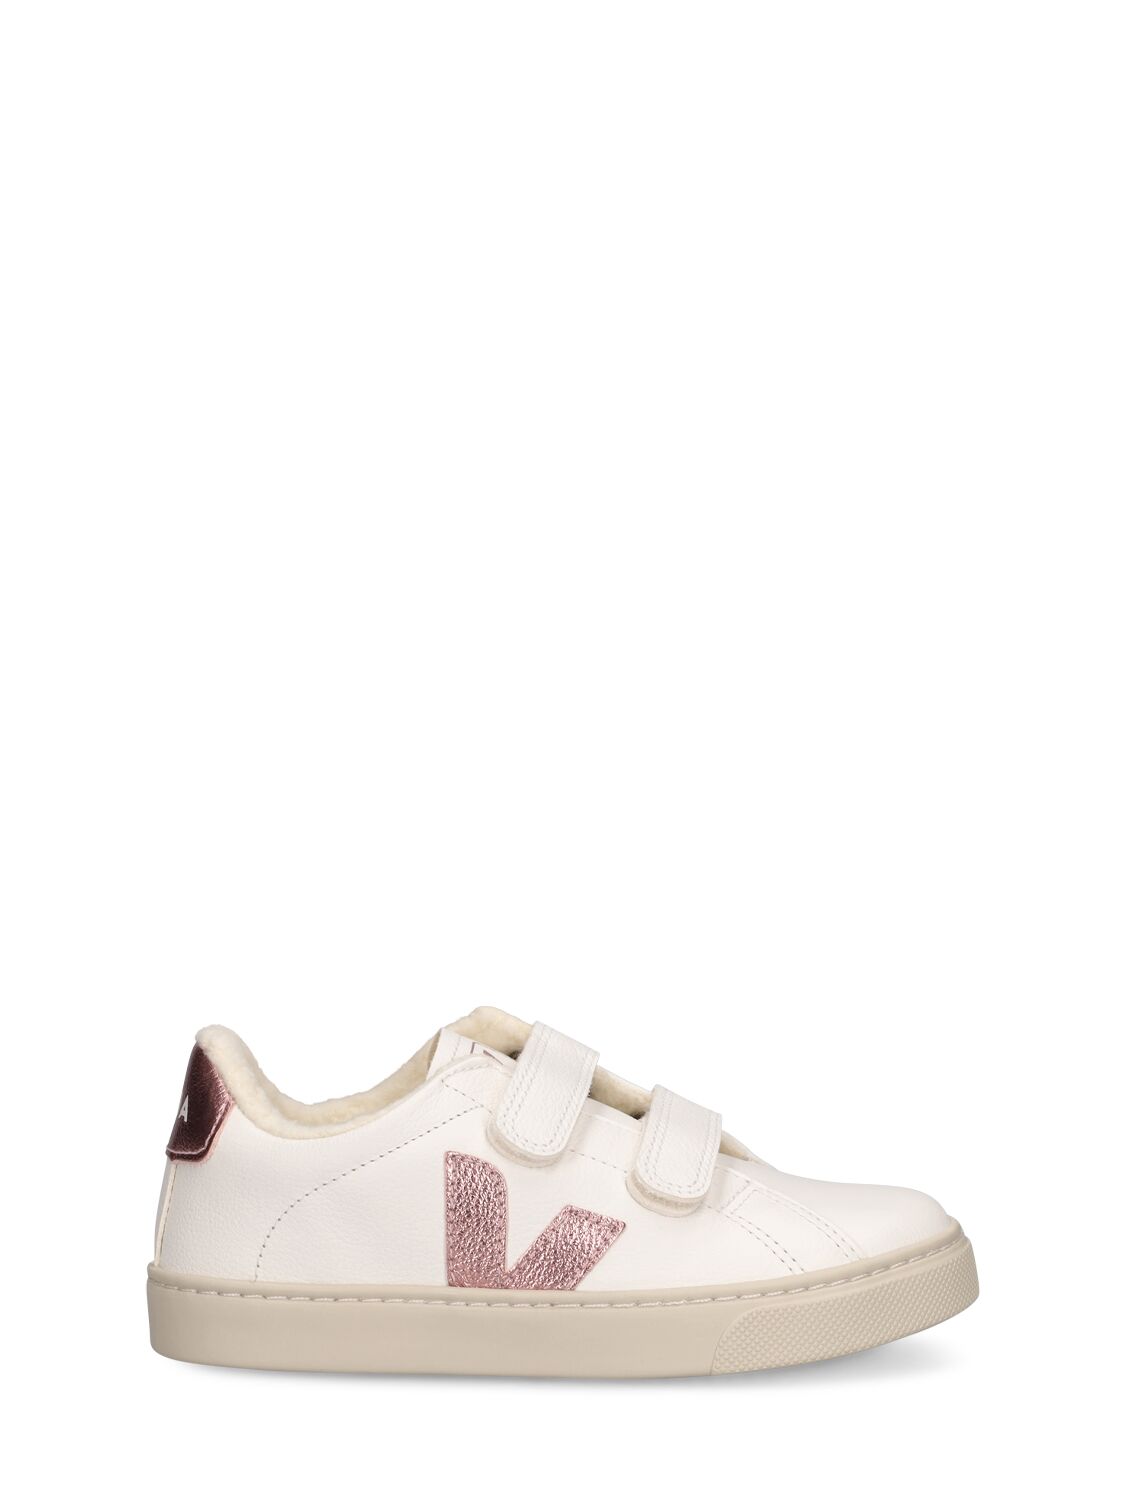 Veja Kids' Esplar Chrome-free Leather Strap Sneaker In White,pink